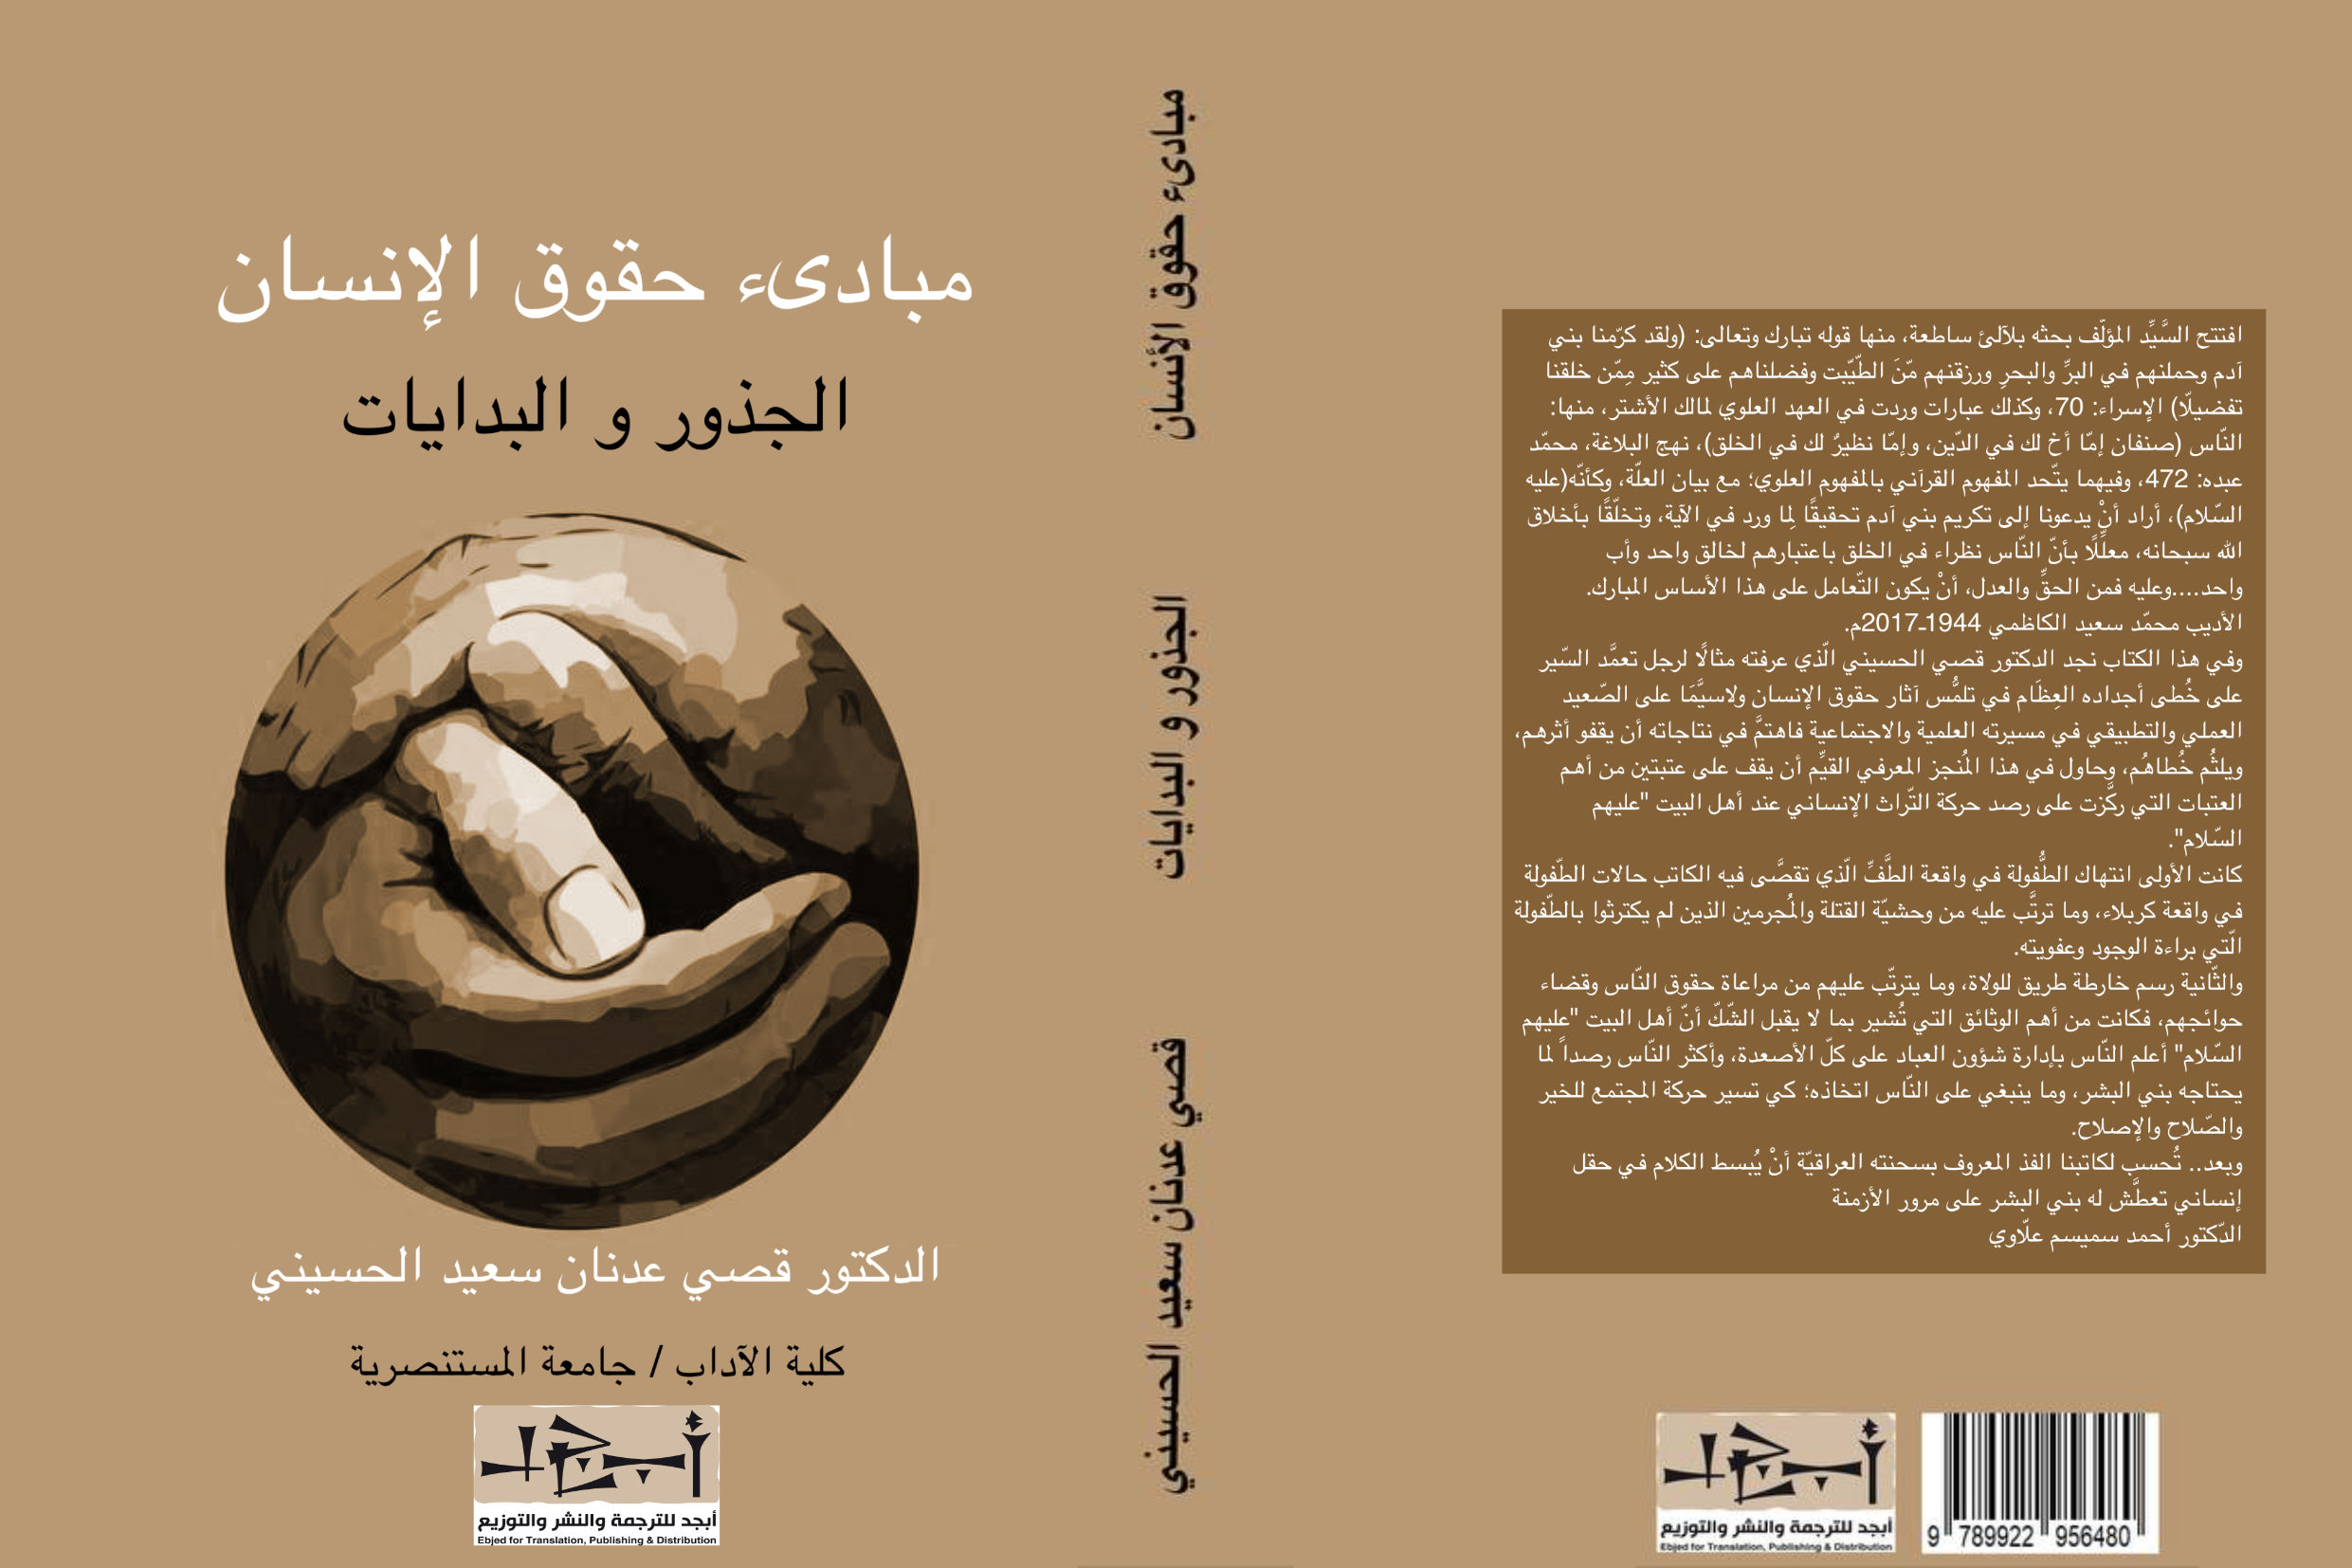 مبادئ حقوق الإنسان - الجذور والبدايات - دكتور قصي عدنان سعيد الحسيني